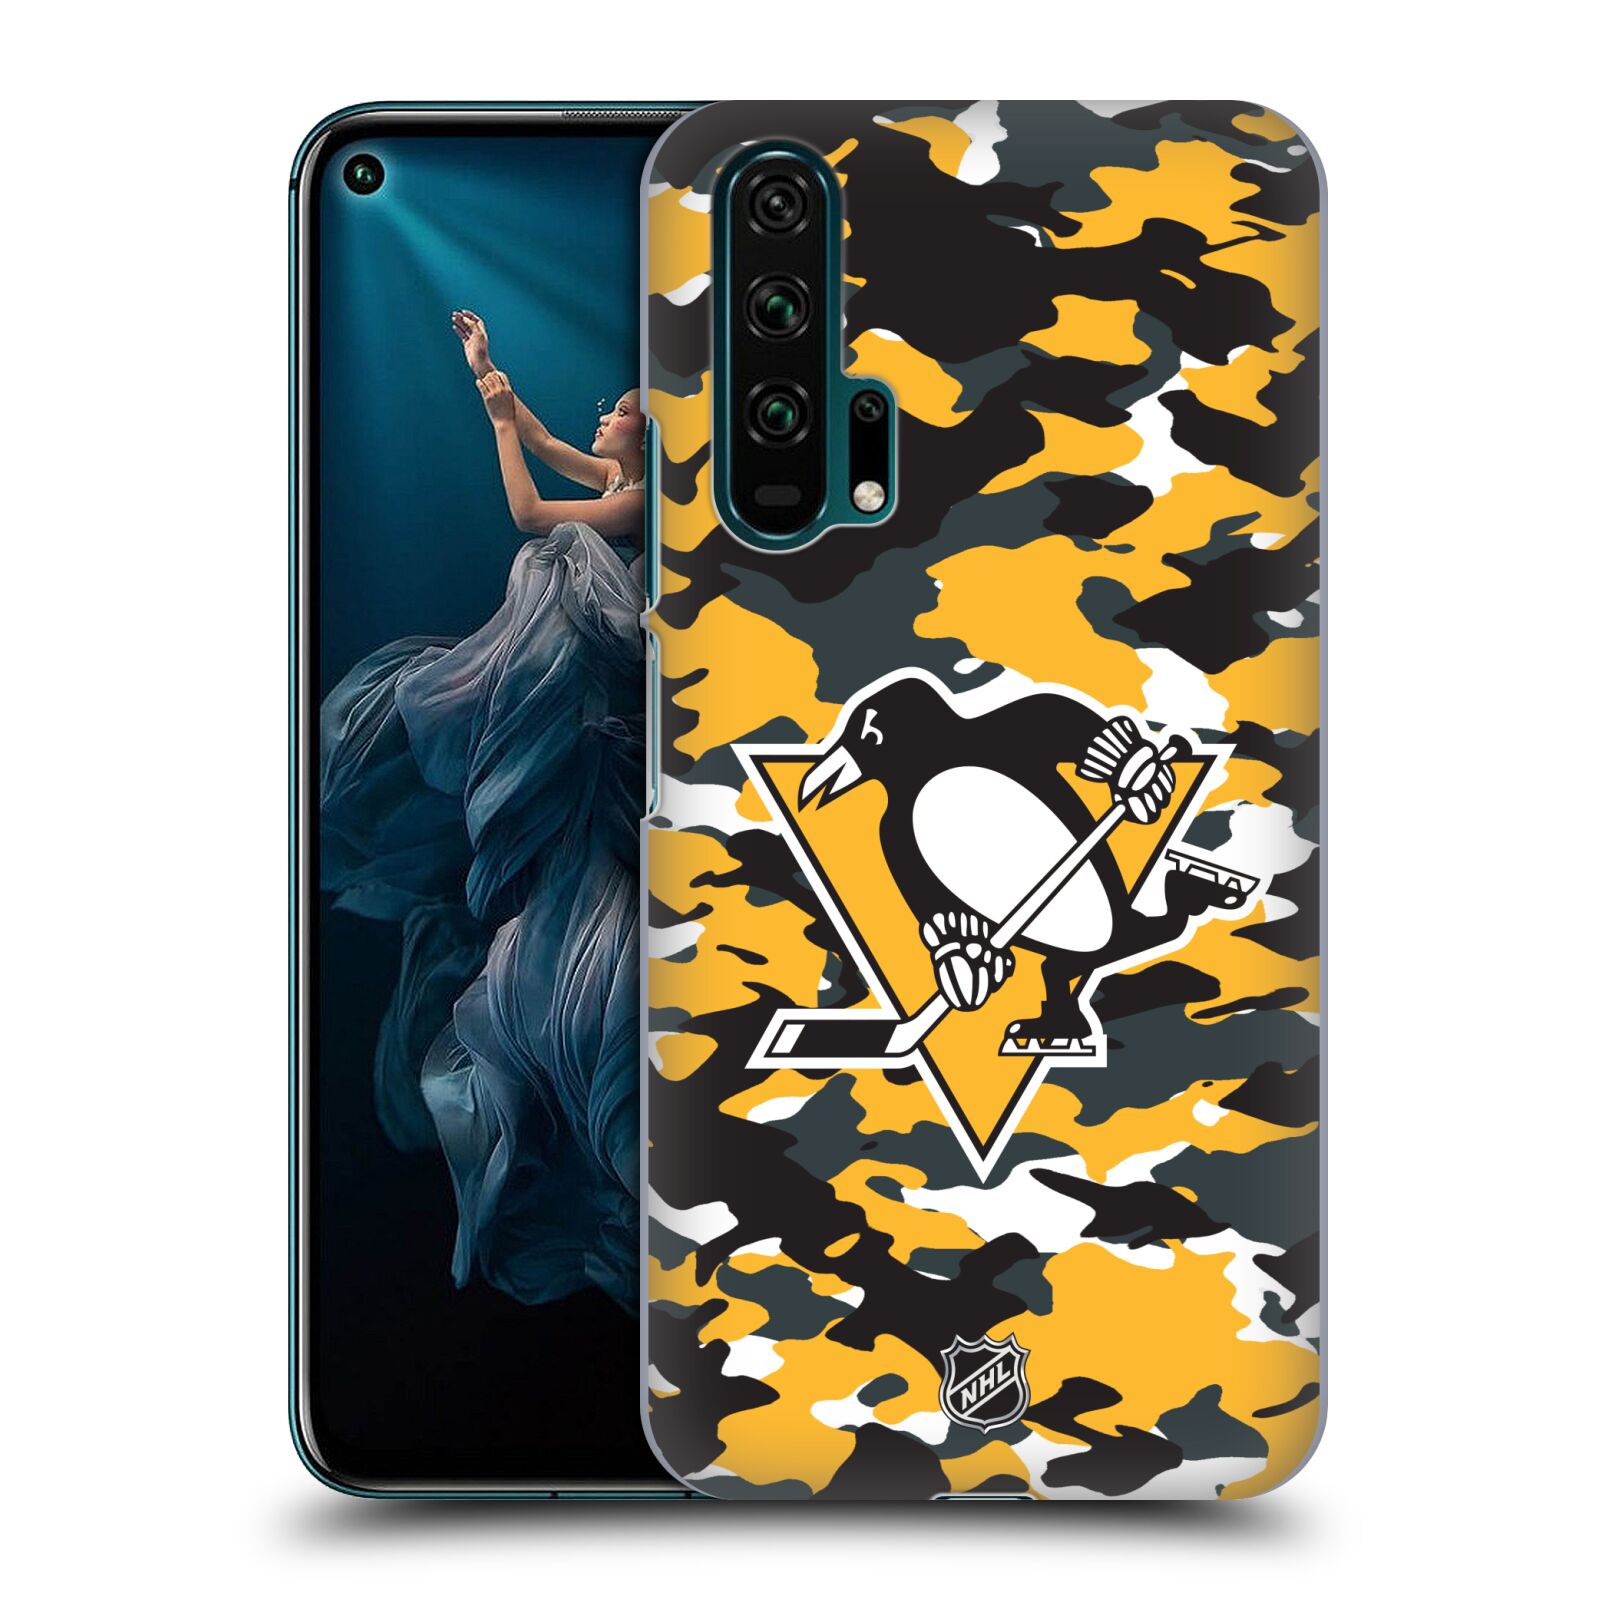 Pouzdro na mobil HONOR 20 PRO - HEAD CASE - Hokej NHL - Pittsburgh Penguins - kamufláž znak